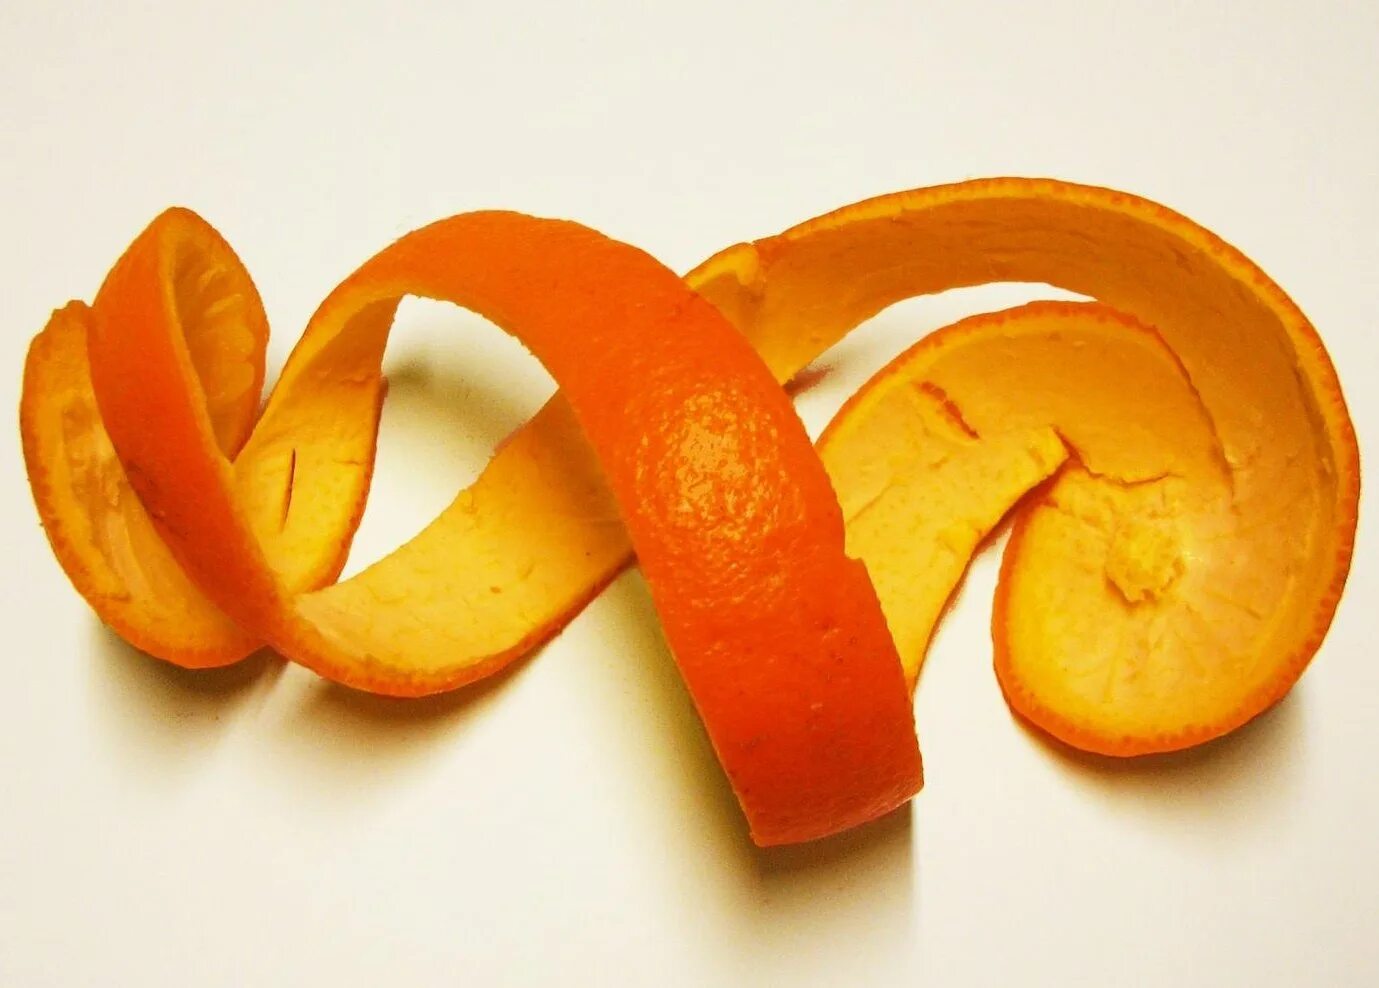 Кожура плодов. Кожура апельсина. Кожура цитрусовых плодов. Нарезанные апельсиновые корки. Шкурка от апельсина.